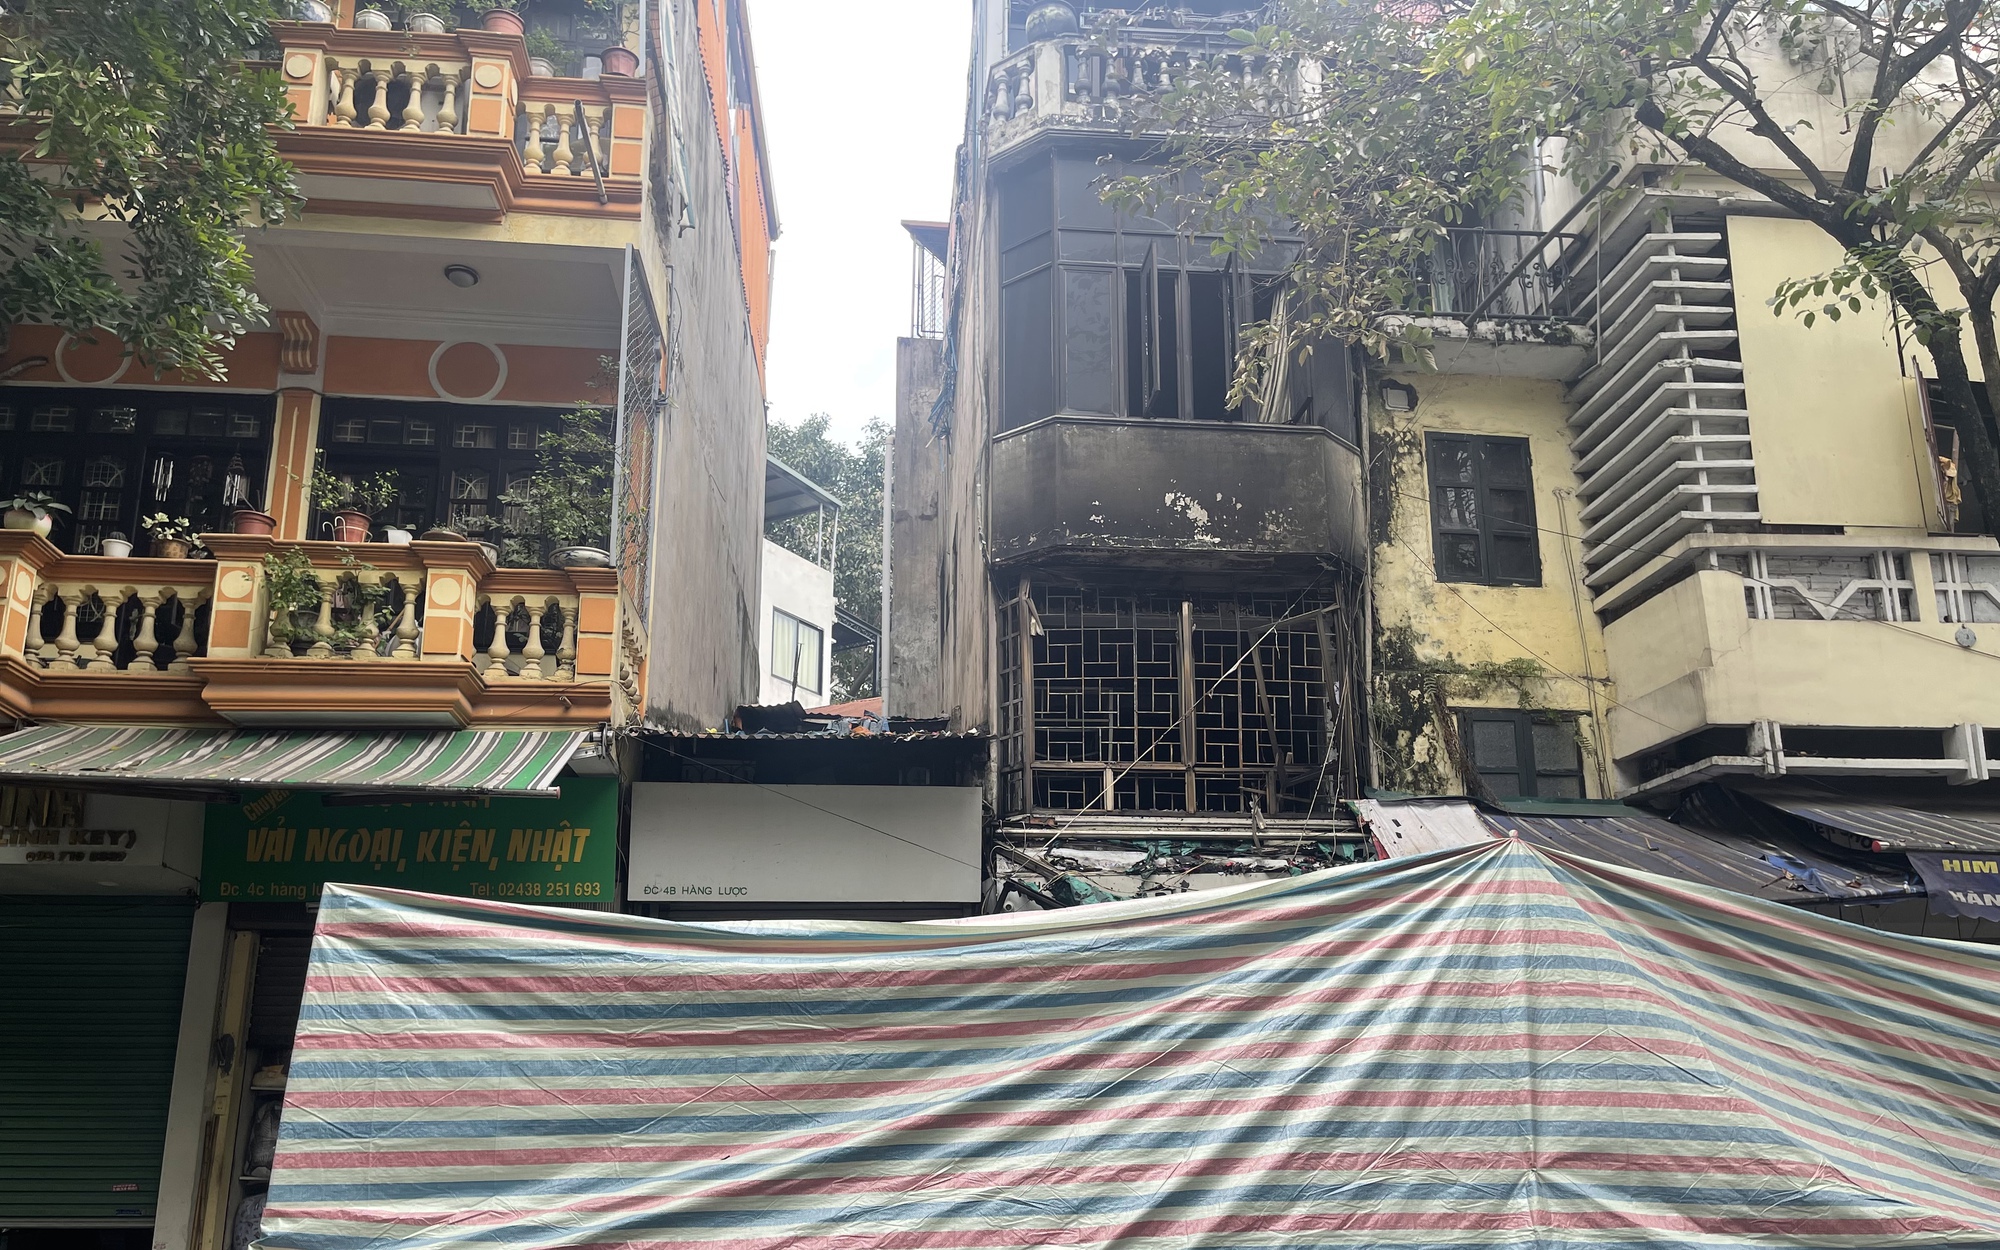 Vụ cháy nhà trên phố Hàng Lược: Hàng xóm nghe thấy tiếng nổ lớn từ tầng 2, phá cửa cứu người bất thành